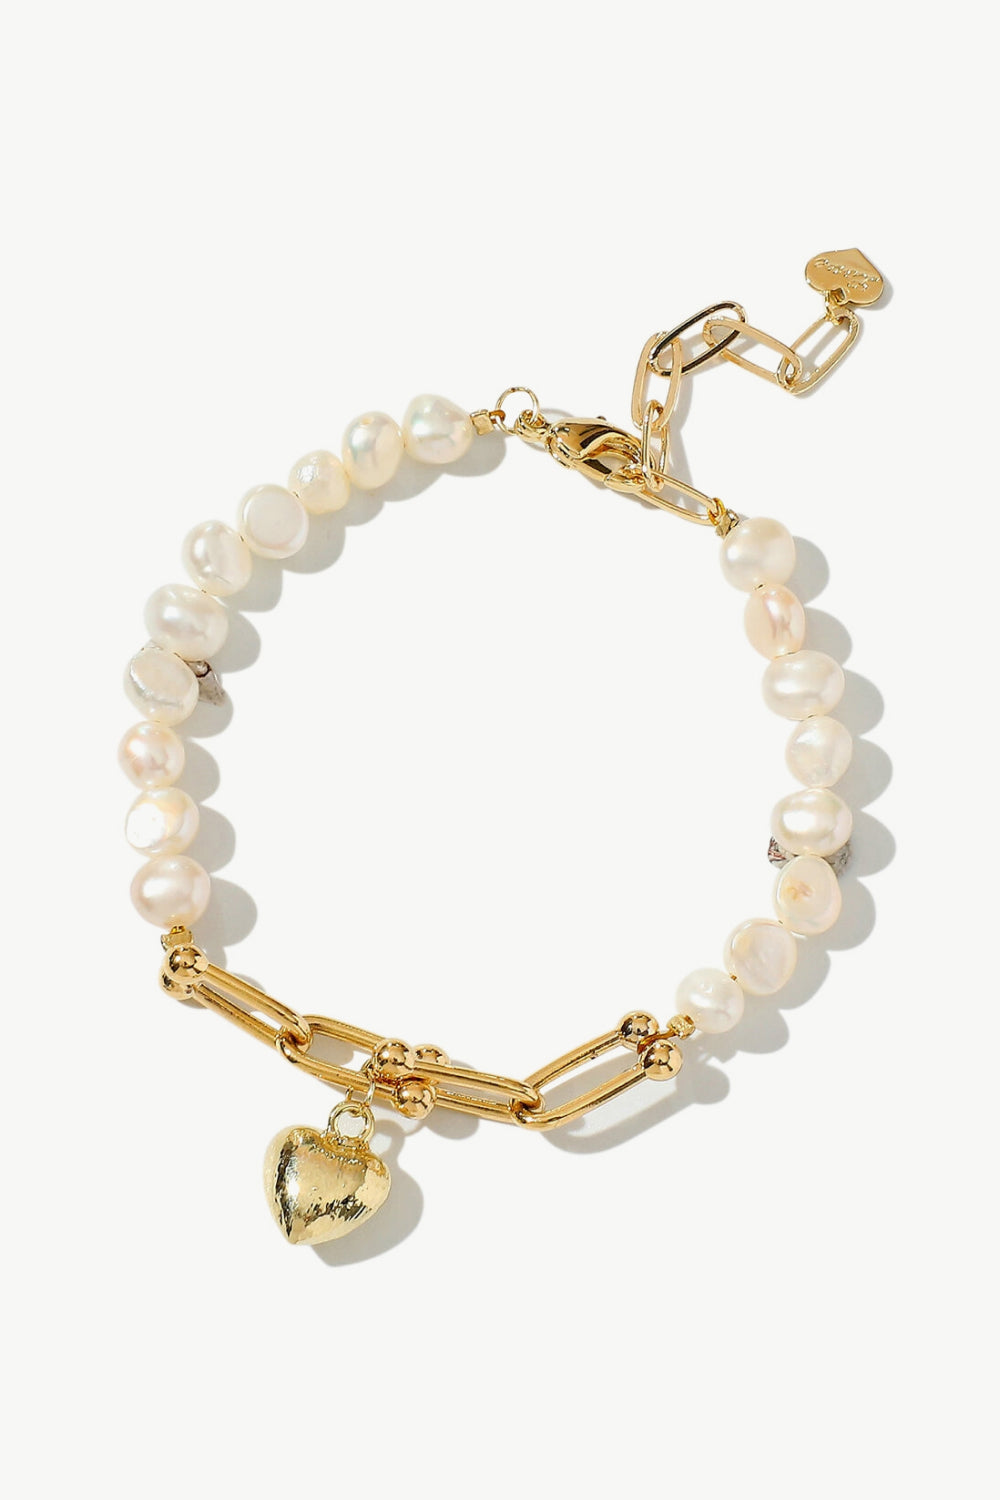 14K Gold Plated Heart Charm Pearl Bracelet - Gold / One Size - Women’s Jewelry - Bracelets - 1 - 2024